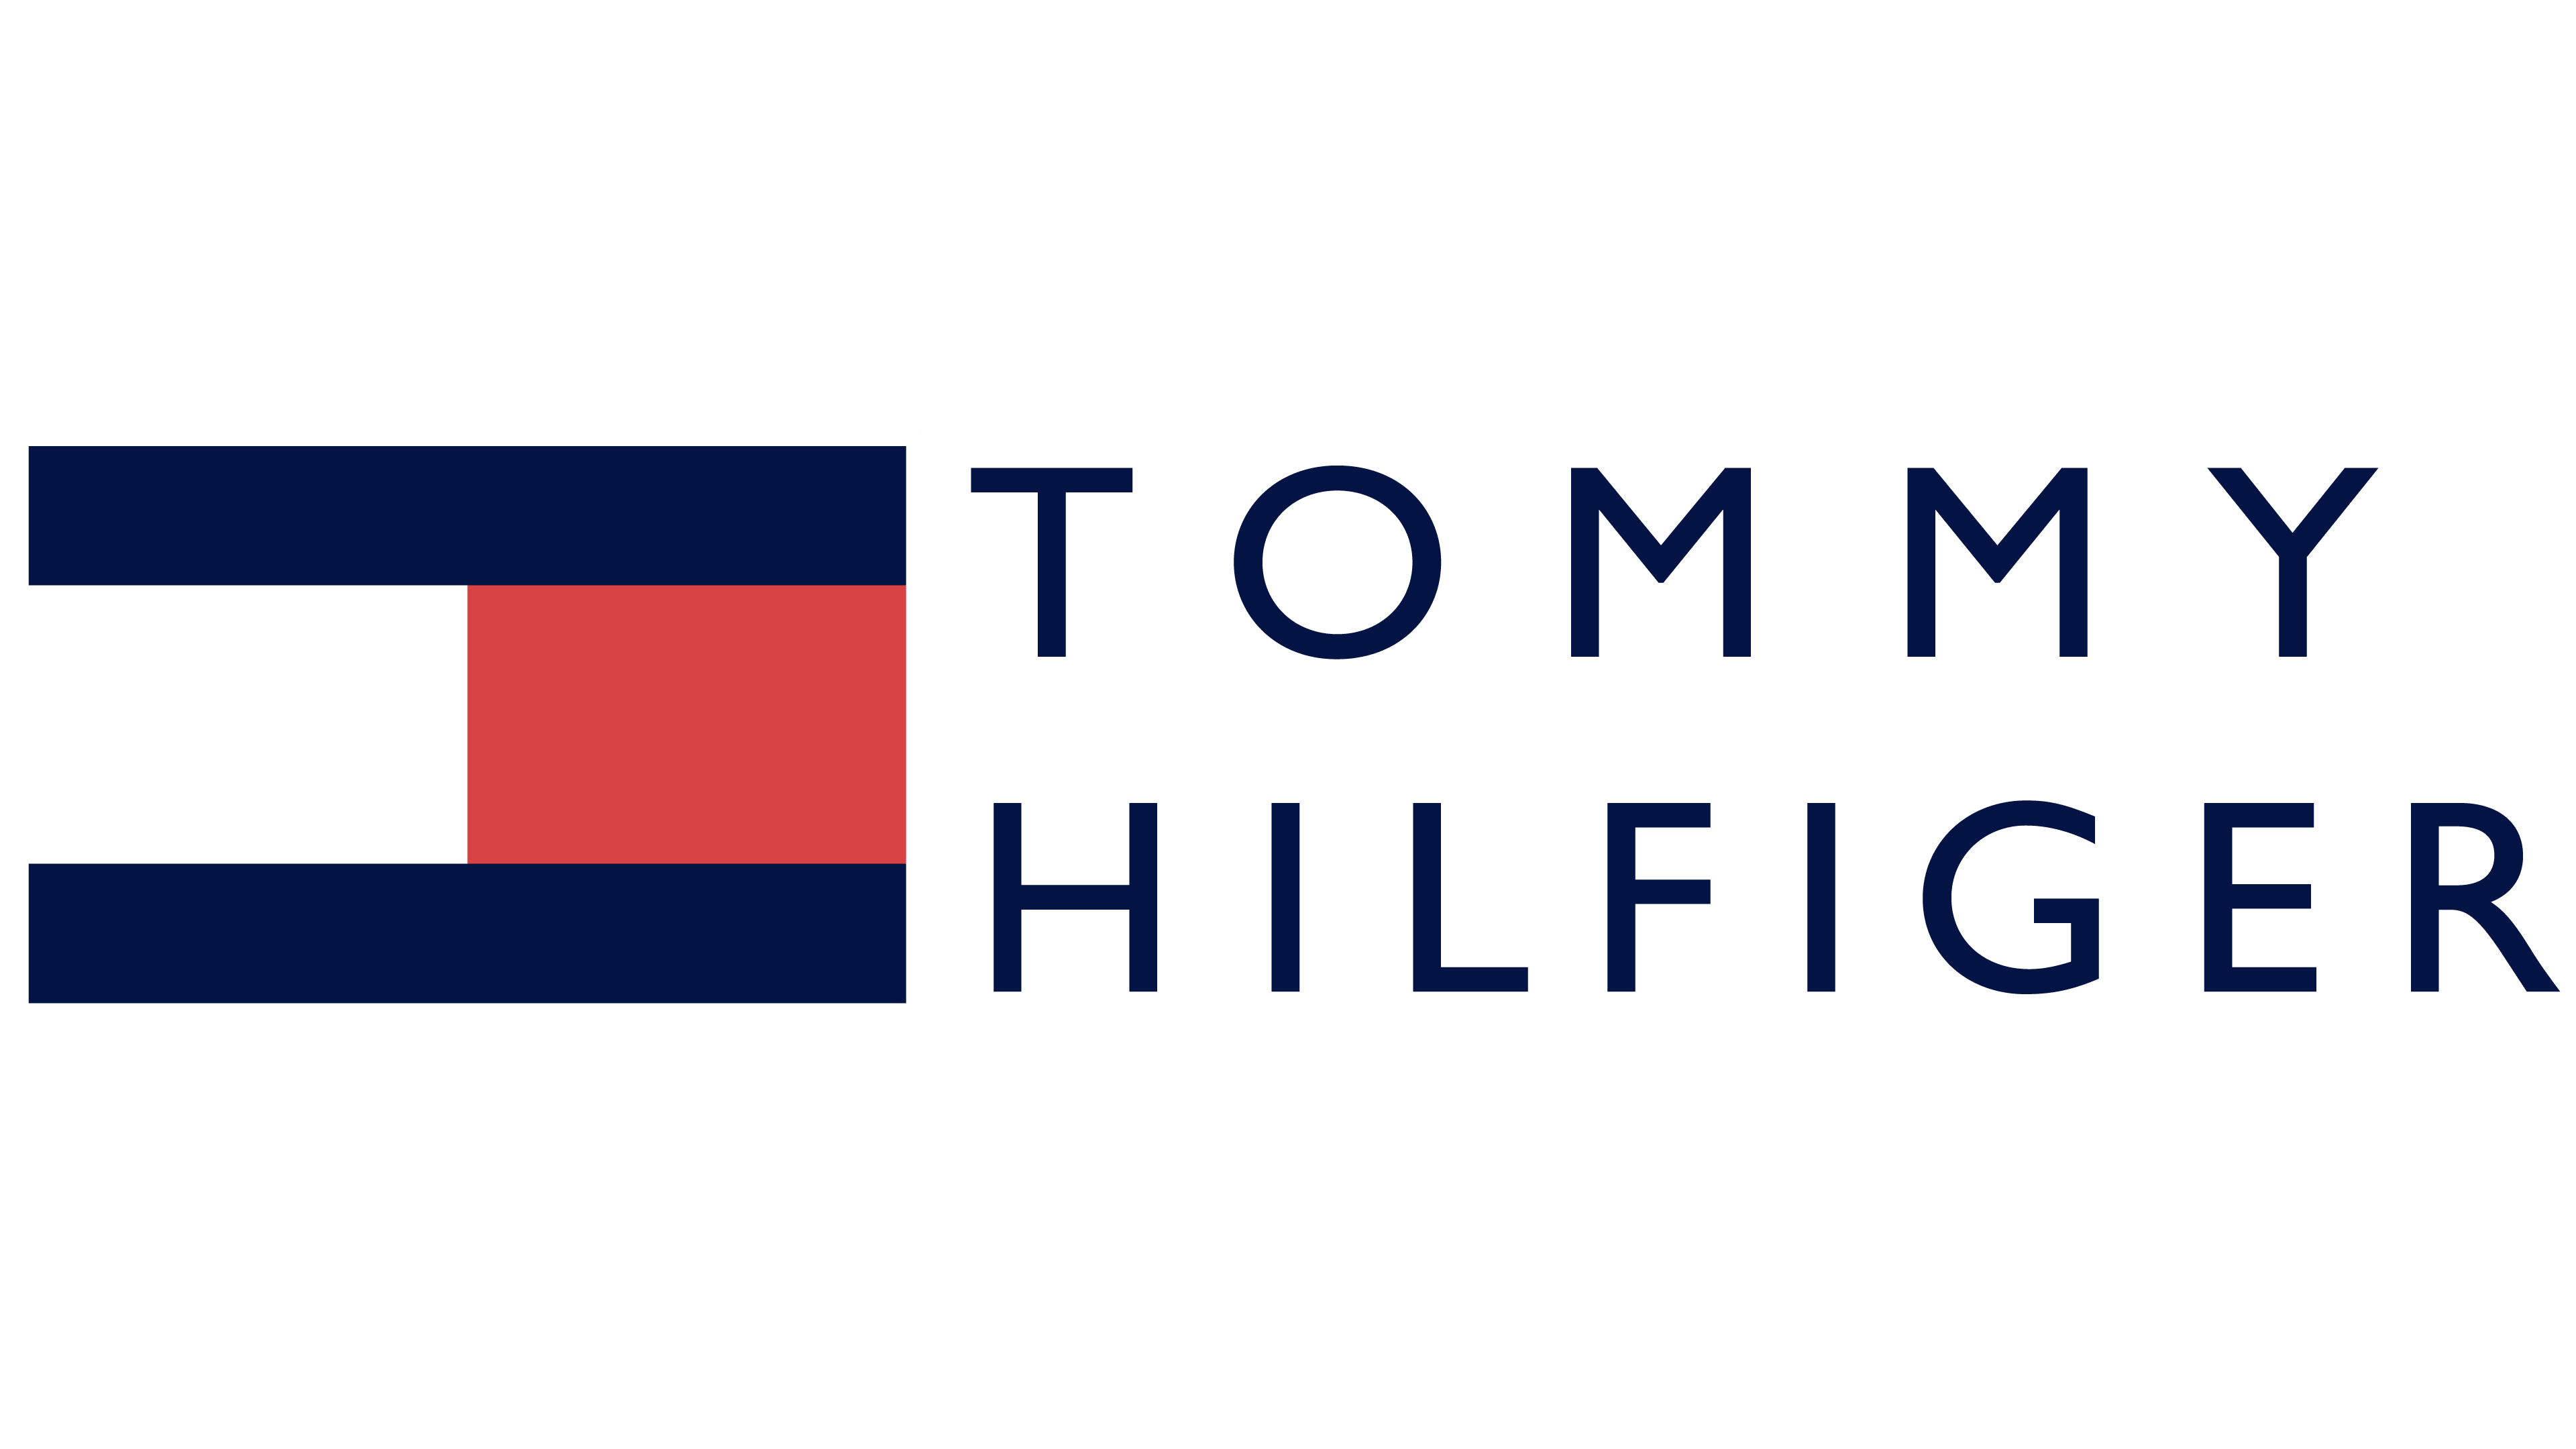 tommy hilfiger transparent logo